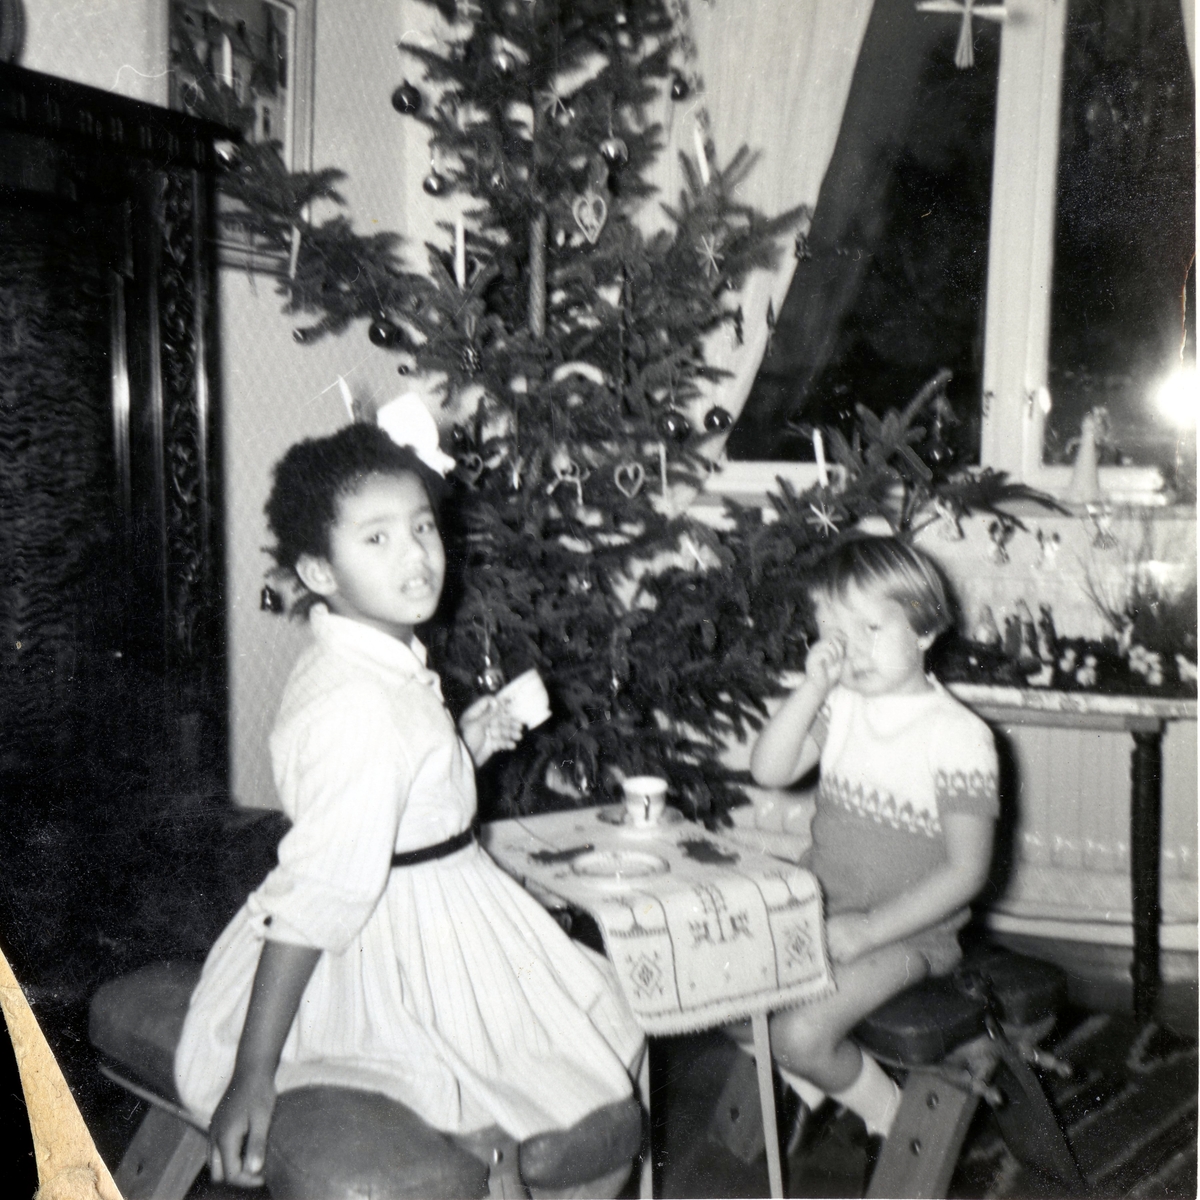 Två små vänner sitter vid ett litet bord framför julgranen och "dricker kaffe" i Manne Ekmans föräldrahem, Rothvalls hus på Streteredsvägen 31 Kållered år 1959. Från vänster: Susanne Kullbring (född 1953) och Manne Ekman (född 1955). Susanne och Manne var barndomskamrater och bodde grannar. Relaterat motiv: A2873.